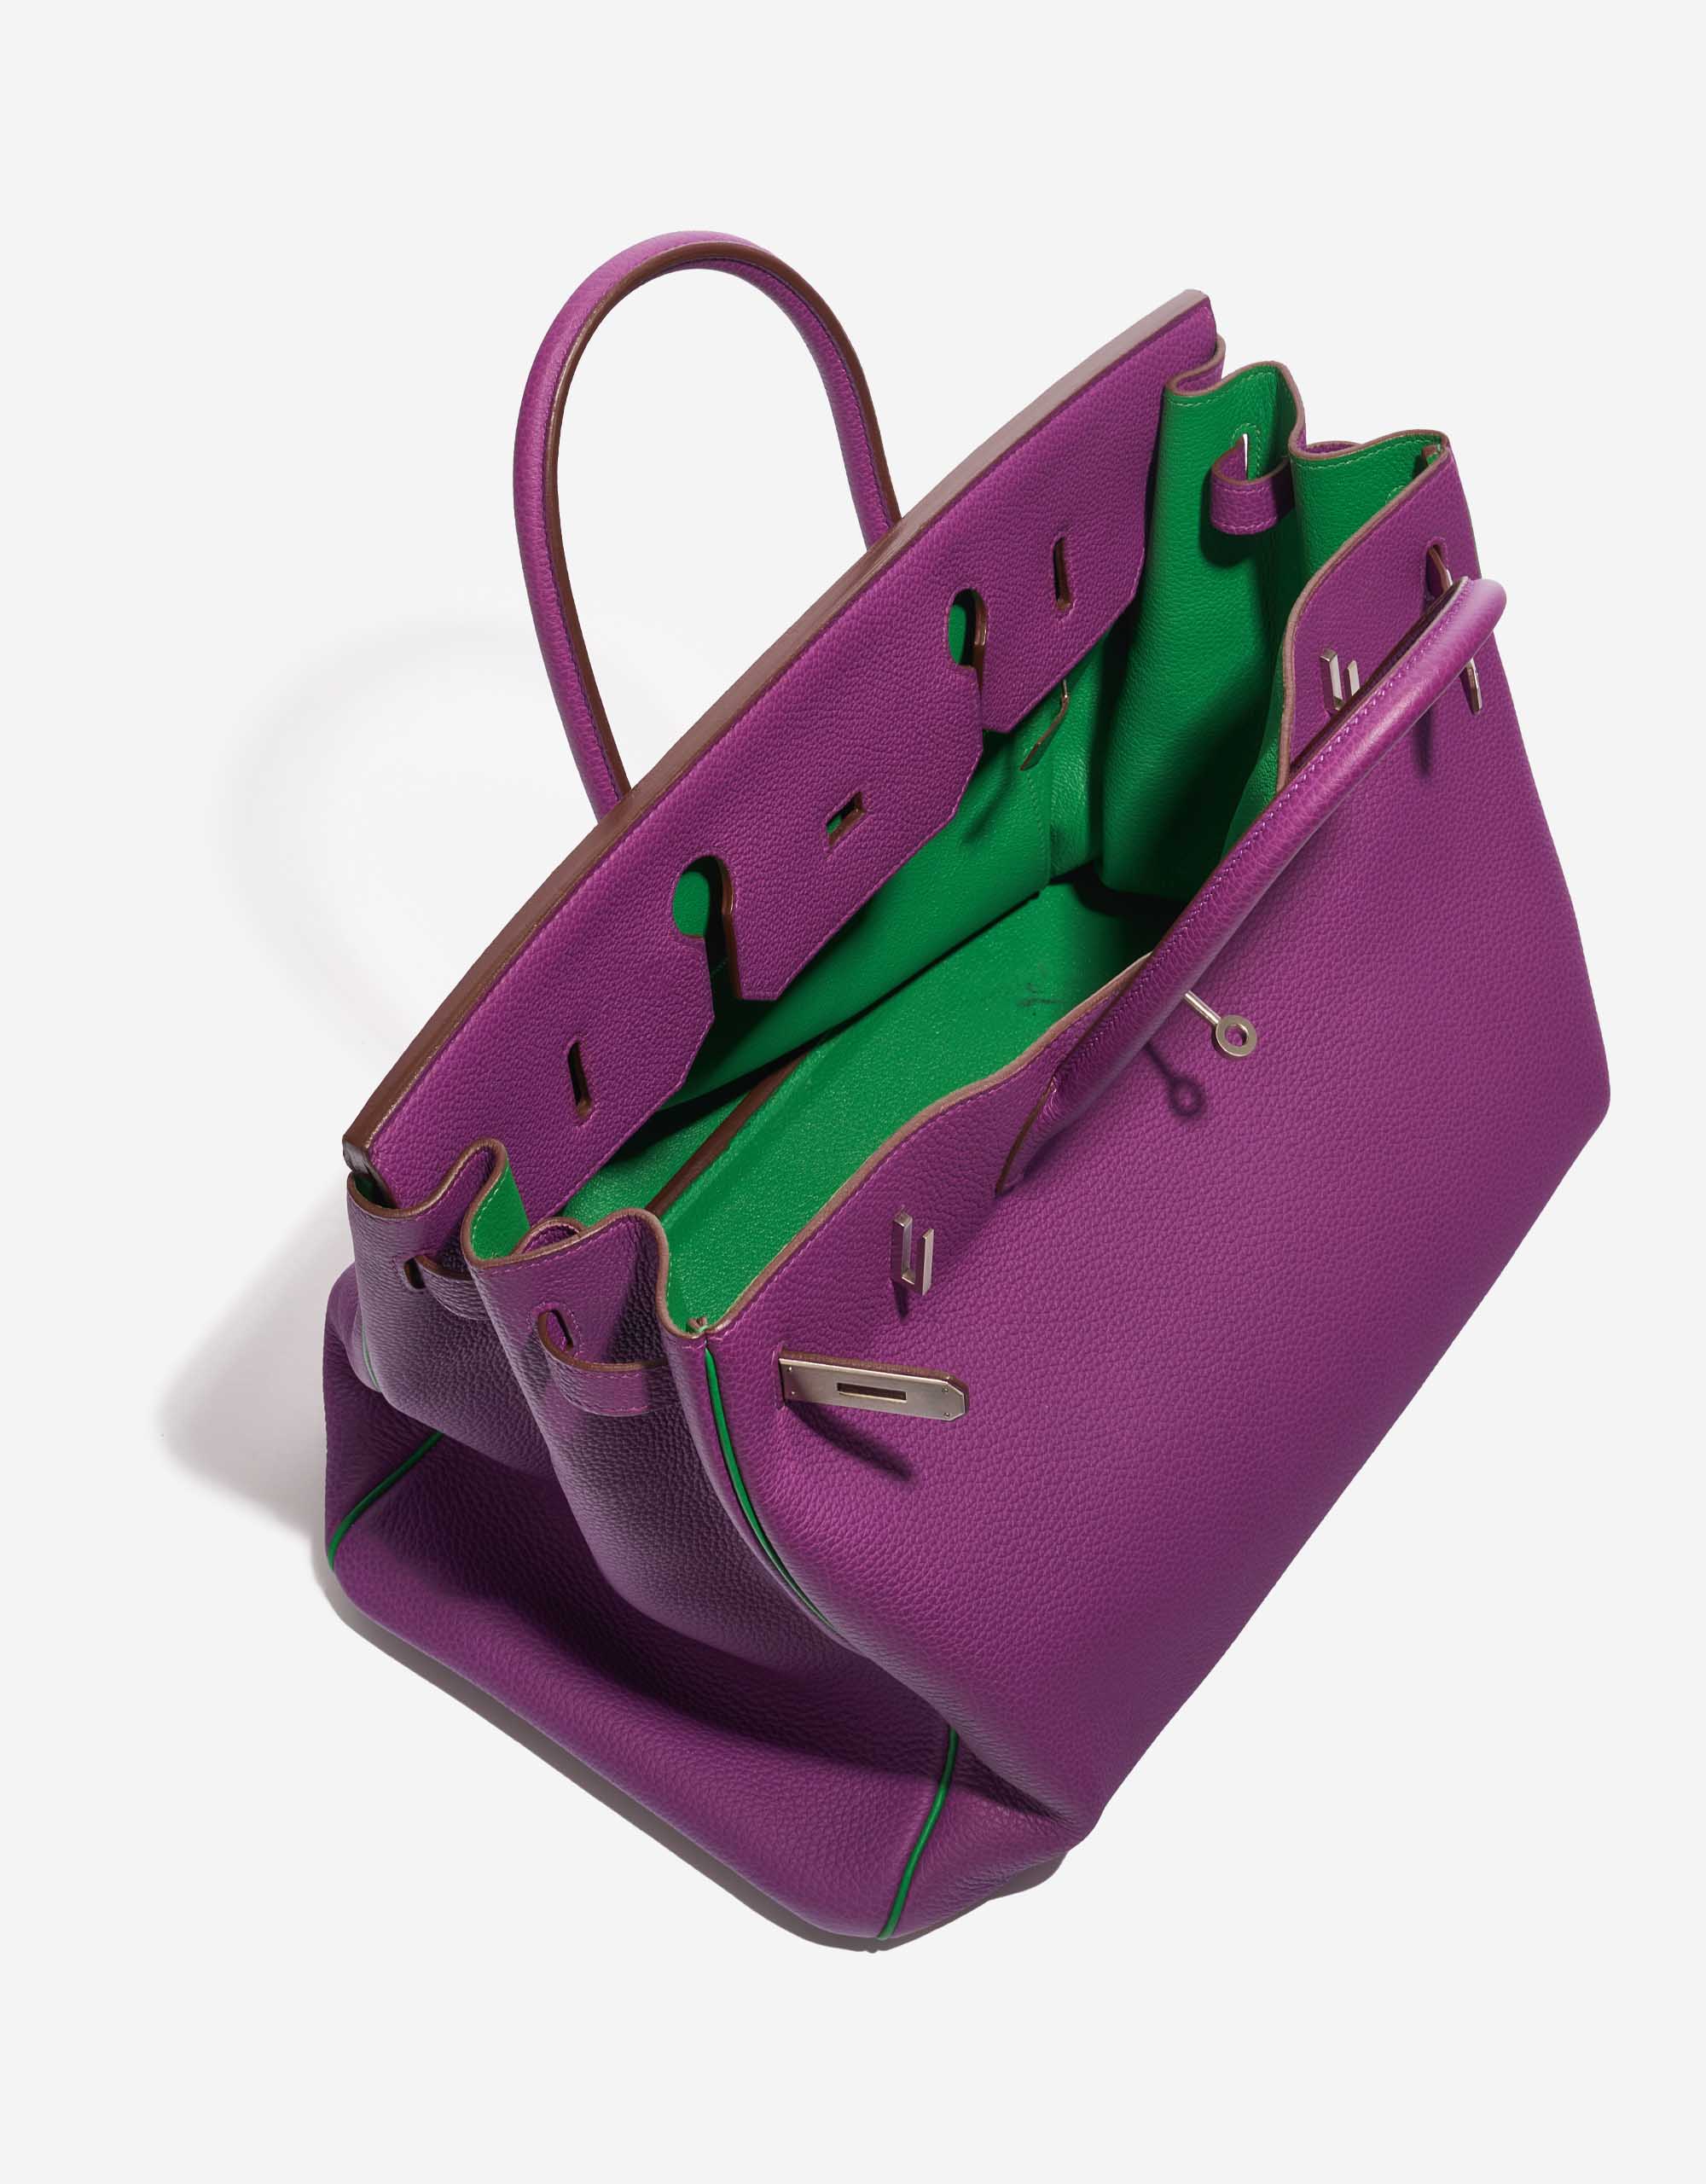 Pre-owned Hermès bag Birkin 40 HSS Togo Anemone / Bamboo Green, Violet Inside | Sell your designer bag on Saclab.com